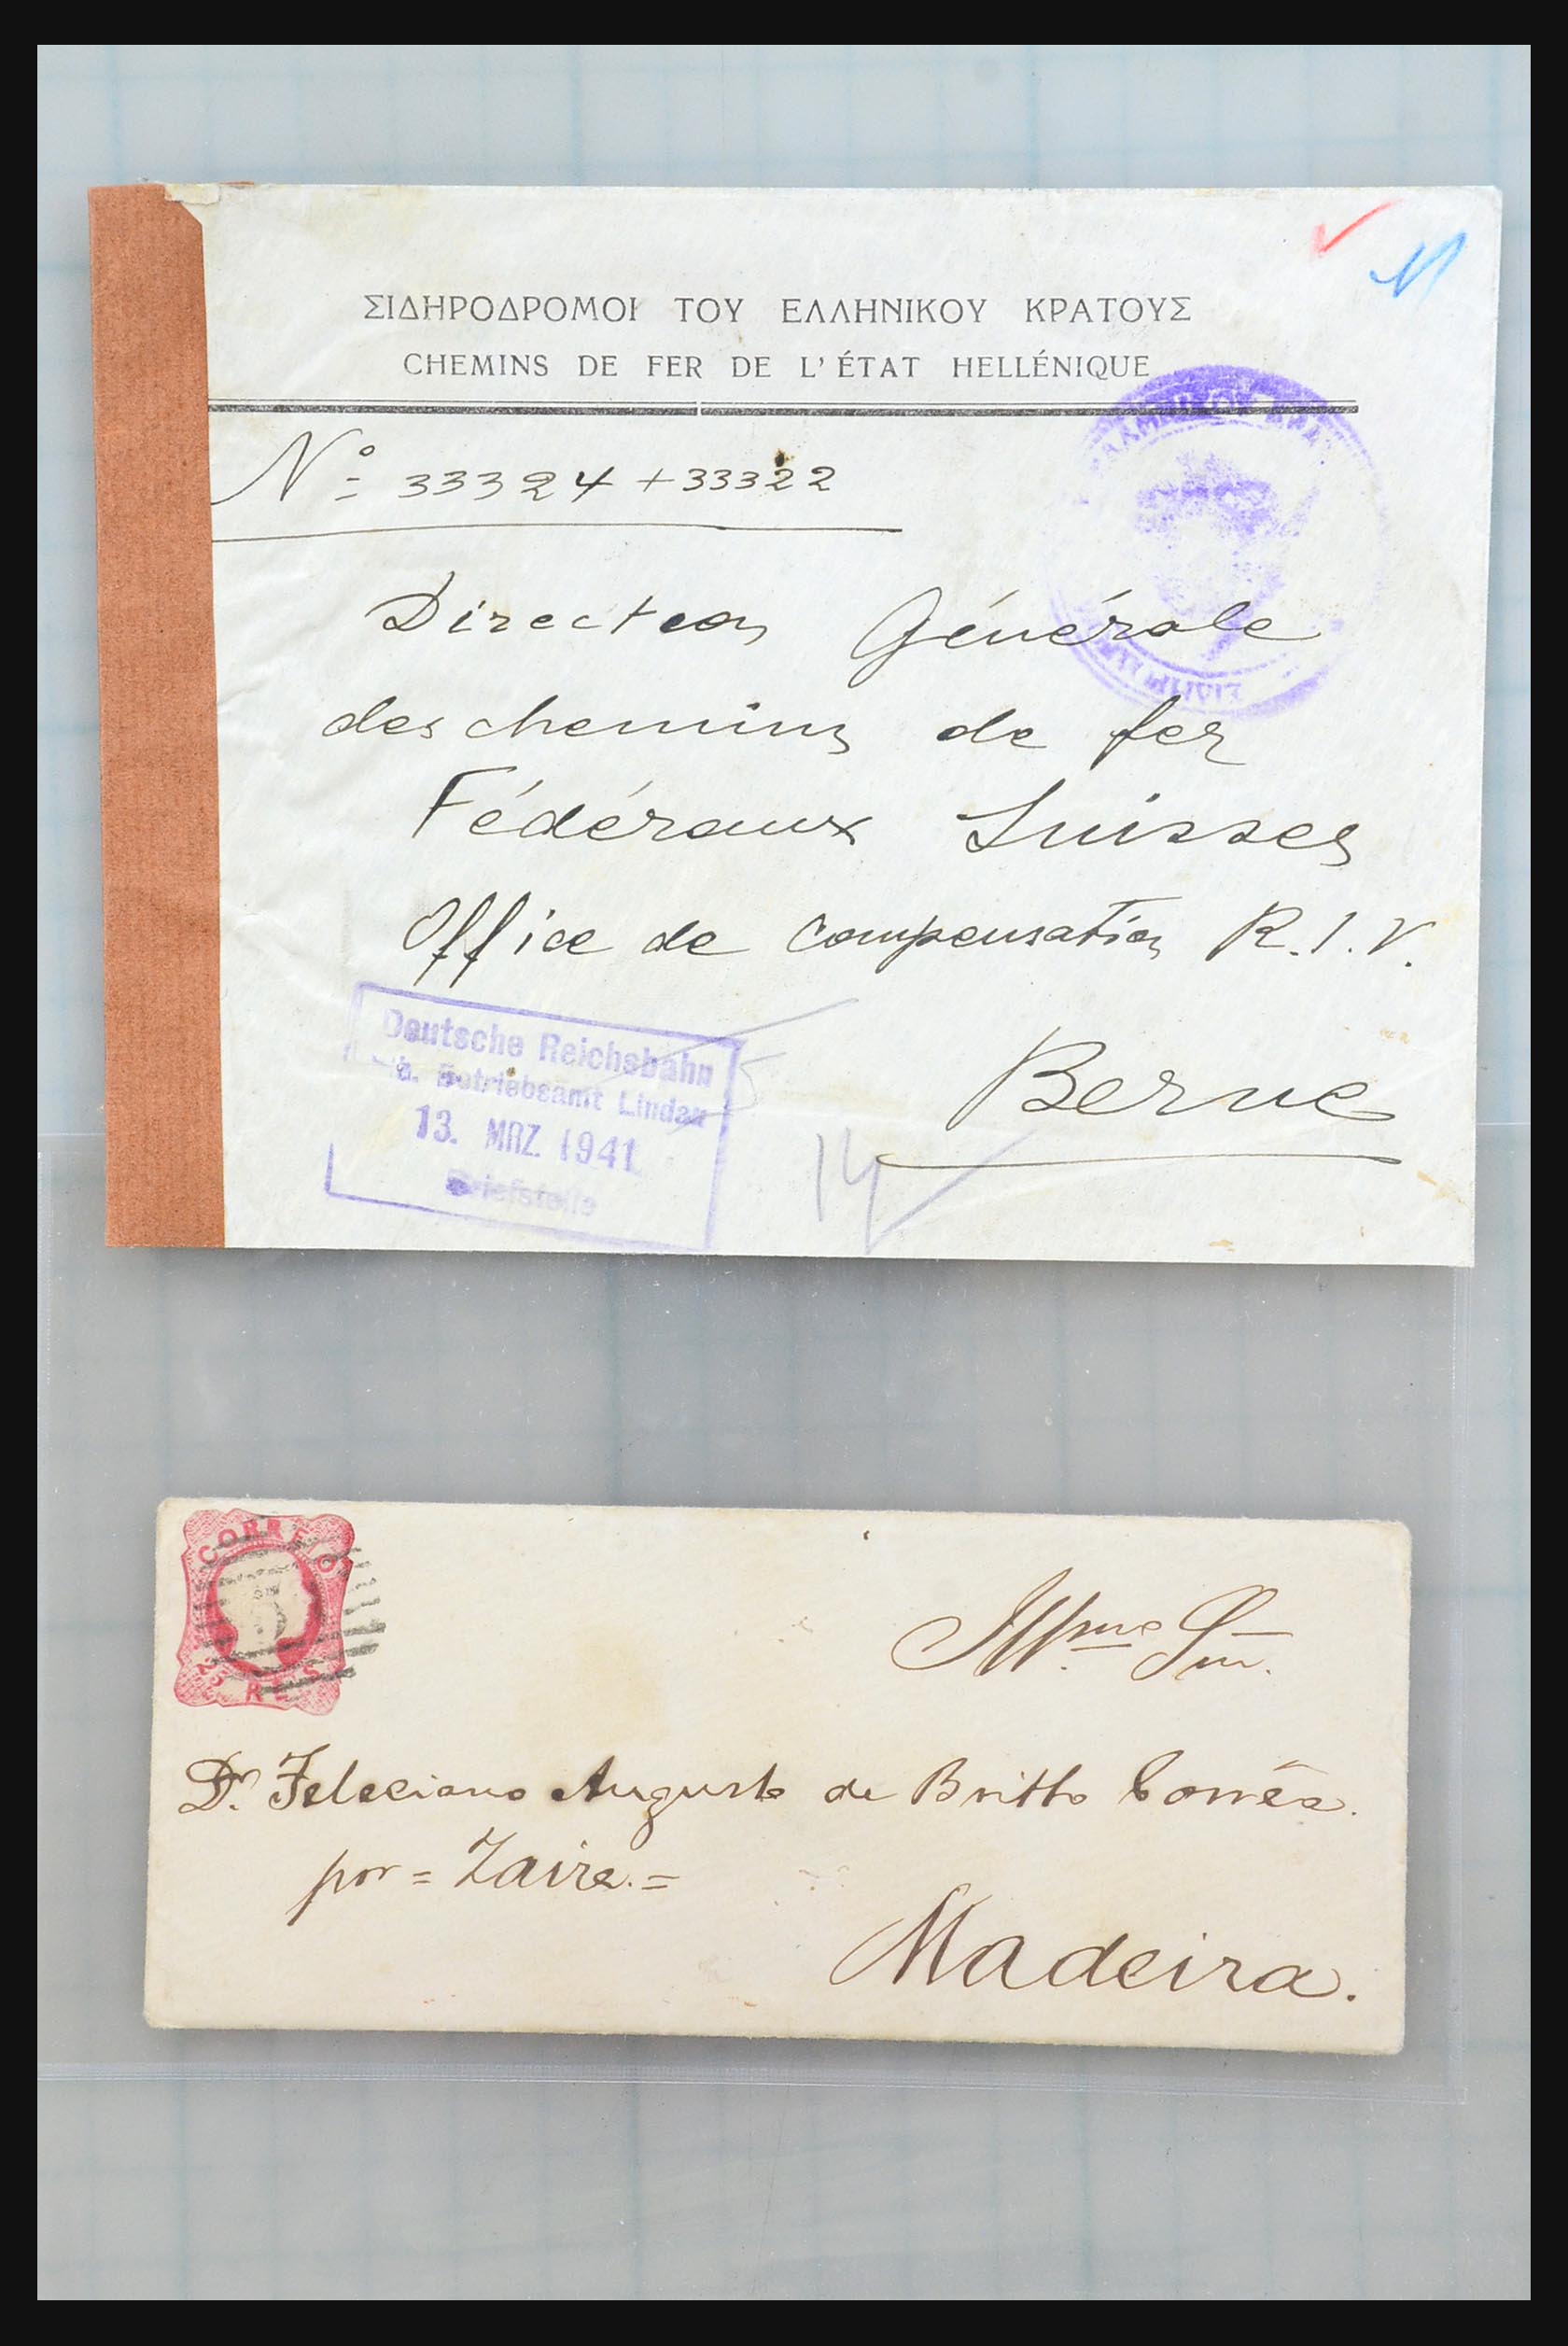 31358 189 - 31358 Portugal/Luxemburg/Griekenland brieven 1880-1960.